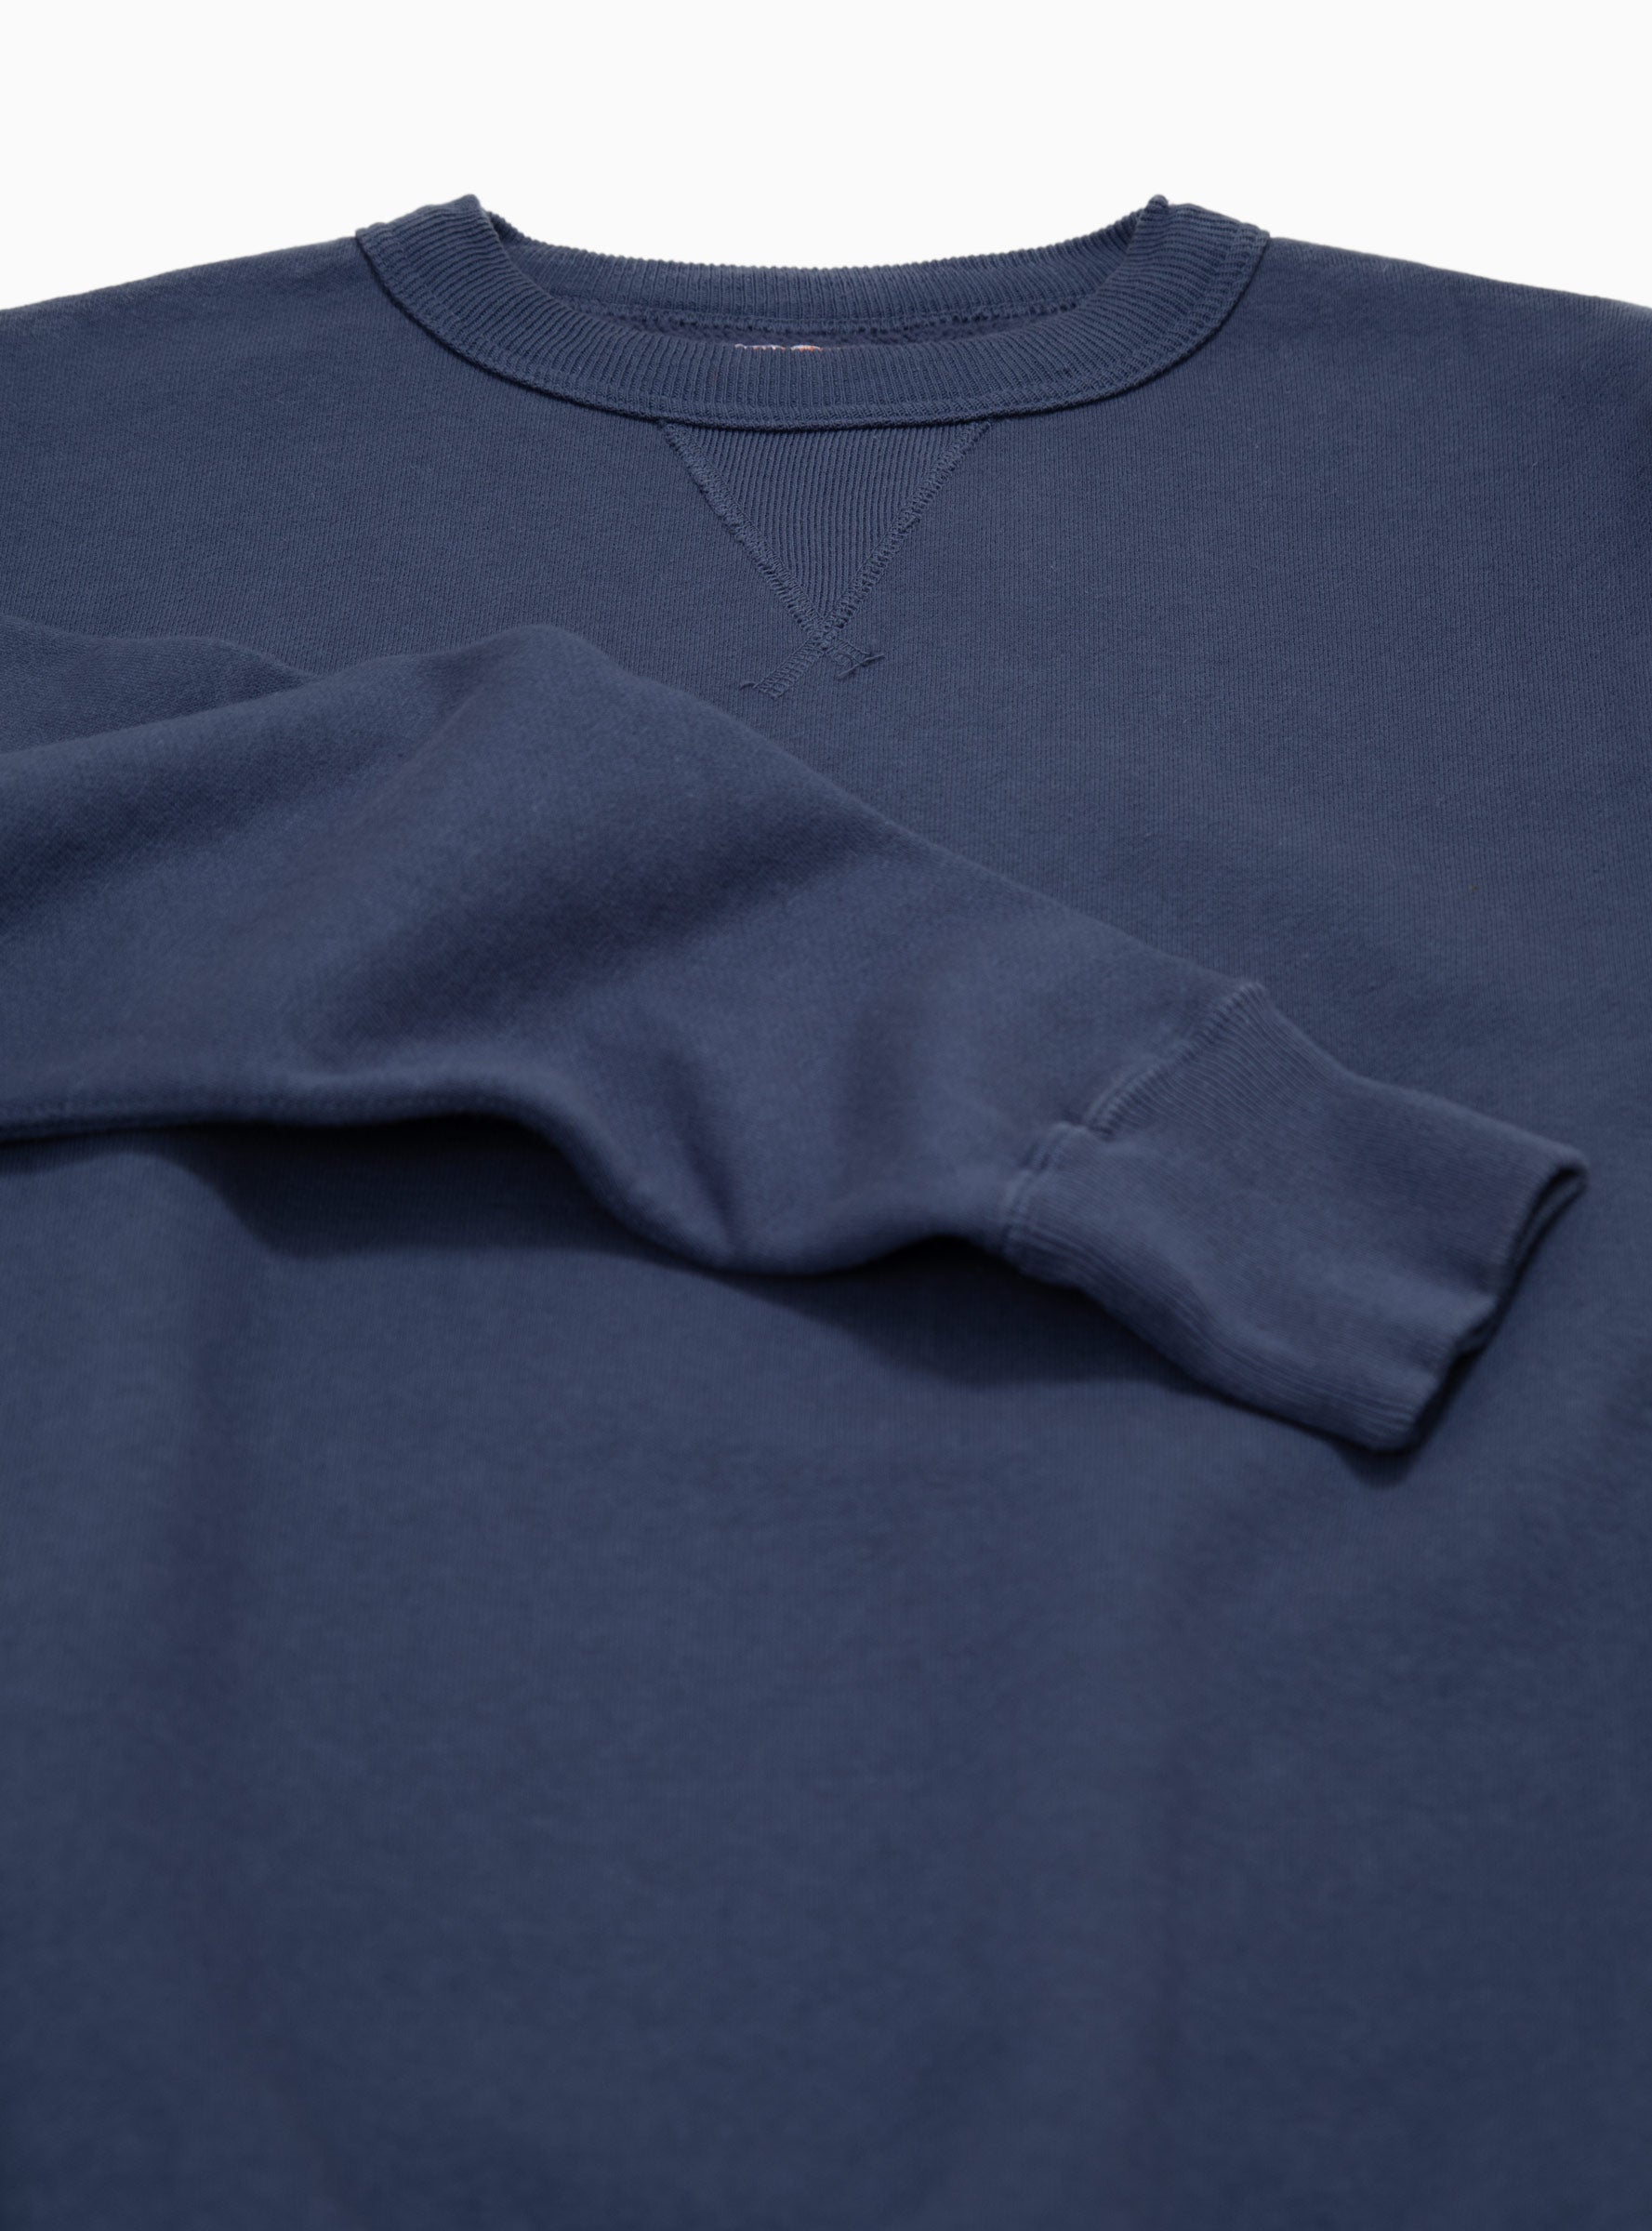 Laniakea Sweatshirt Insignia Blue by Sunray Sportswear | Couverture ...